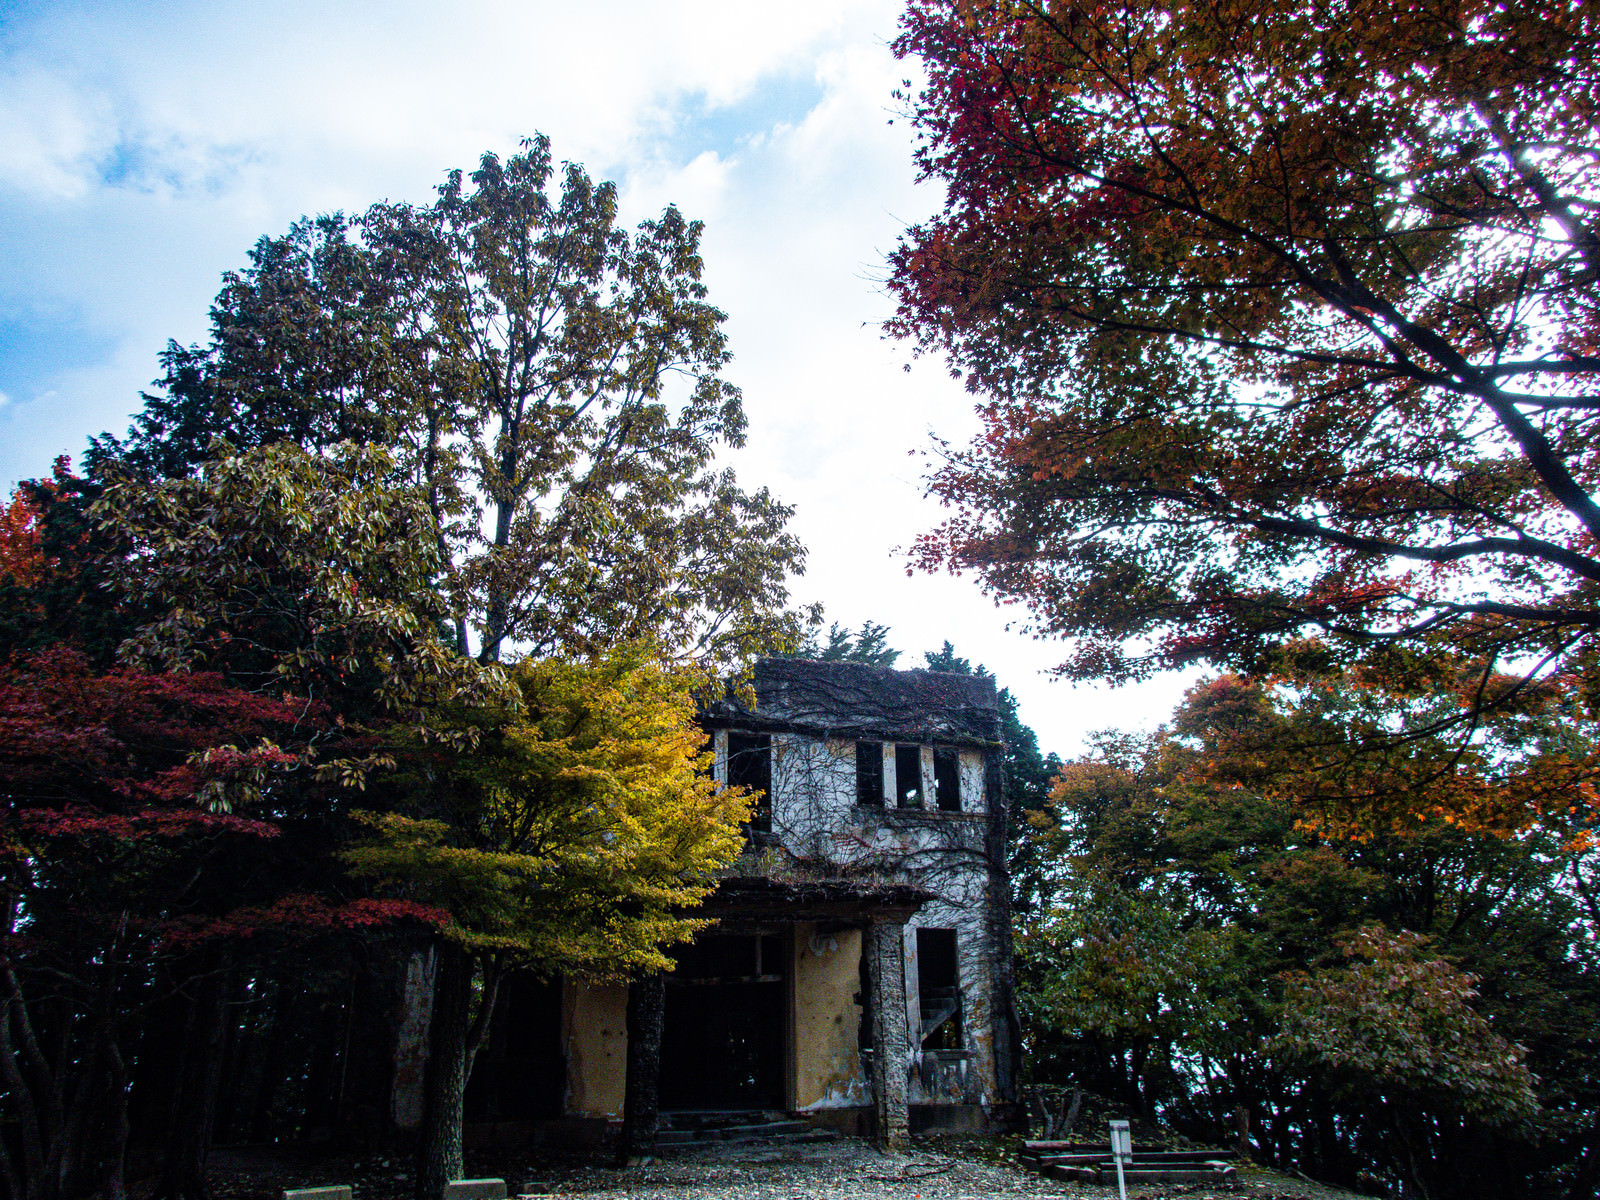 「ケーブルカー駅舎跡を取り囲む紅葉した木々 | フリー素材のぱくたそ」の写真